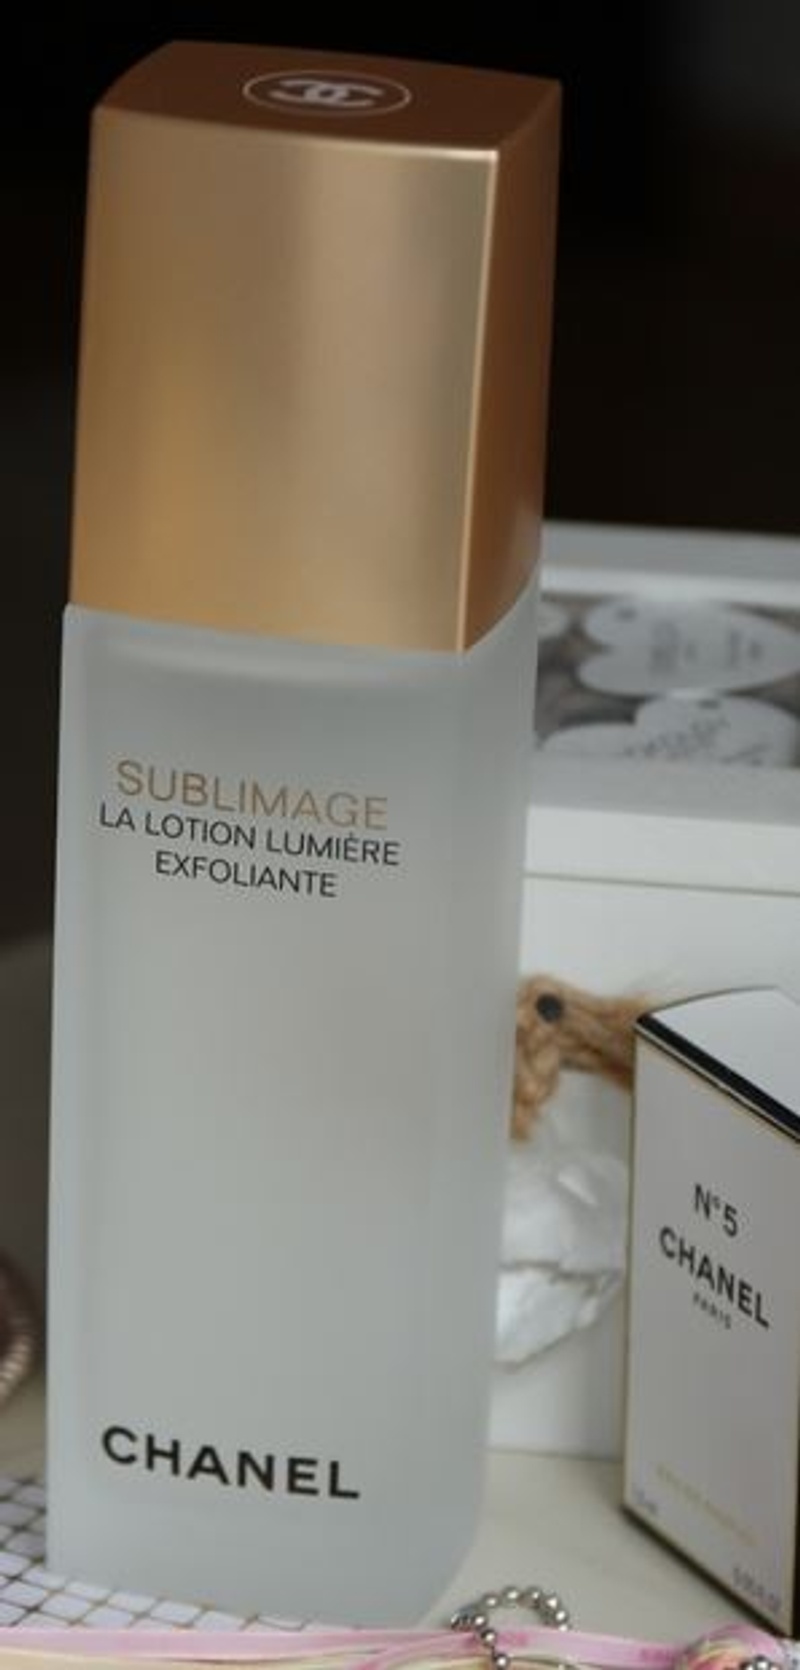 CHANEL SUBLIMAGE LA LOTION LUMIÈRE EXFOLIANTE - Ultimate Light-Renewing  Exfoliating Lotion - Reviews